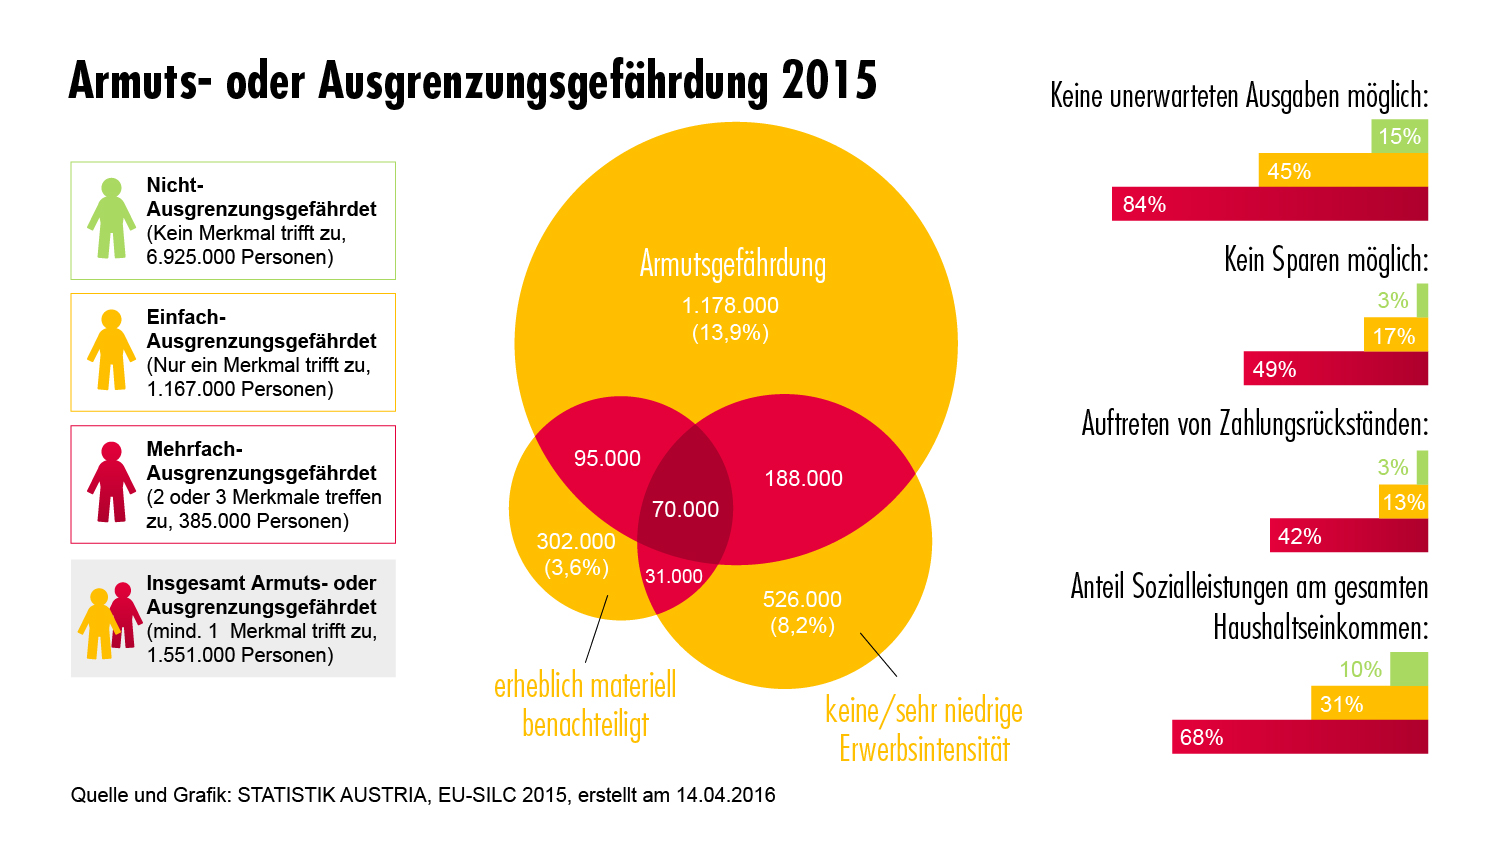 Im Jahr 2015 ist in Österreich von rund 1.551.000 Armuts- oder Ausgrenzungsgefährdeten nach Definition der Europa 2020-Strategie auszugehen, das entspricht 18,3% der Gesamtbevölkerung. Der Indikator „Armuts- oder Ausgrenzungsgefährdung“ umfasst die drei Zielgruppen „Armutsgefährdung“, „erhebliche materielle Deprivation“ und „Personen in Haushalten mit keiner oder sehr niedriger Erwerbsintensität“. 13,9% der Bevölkerung waren im Jahr 2015 armutsgefährdet, 3,6% der Gesamtbevölkerung waren erheblich materiell depriviert und 8,2% (nur Personen unter 60 Jahren) lebten in Haushalten mit keiner oder sehr niedriger Erwerbsintensität. Da diese Merkmale in Kombination auftreten können, ist die Zahl der Armuts- oder Ausgrenzungsgefährdeten geringer als die Summe der drei Einzelindikatoren.